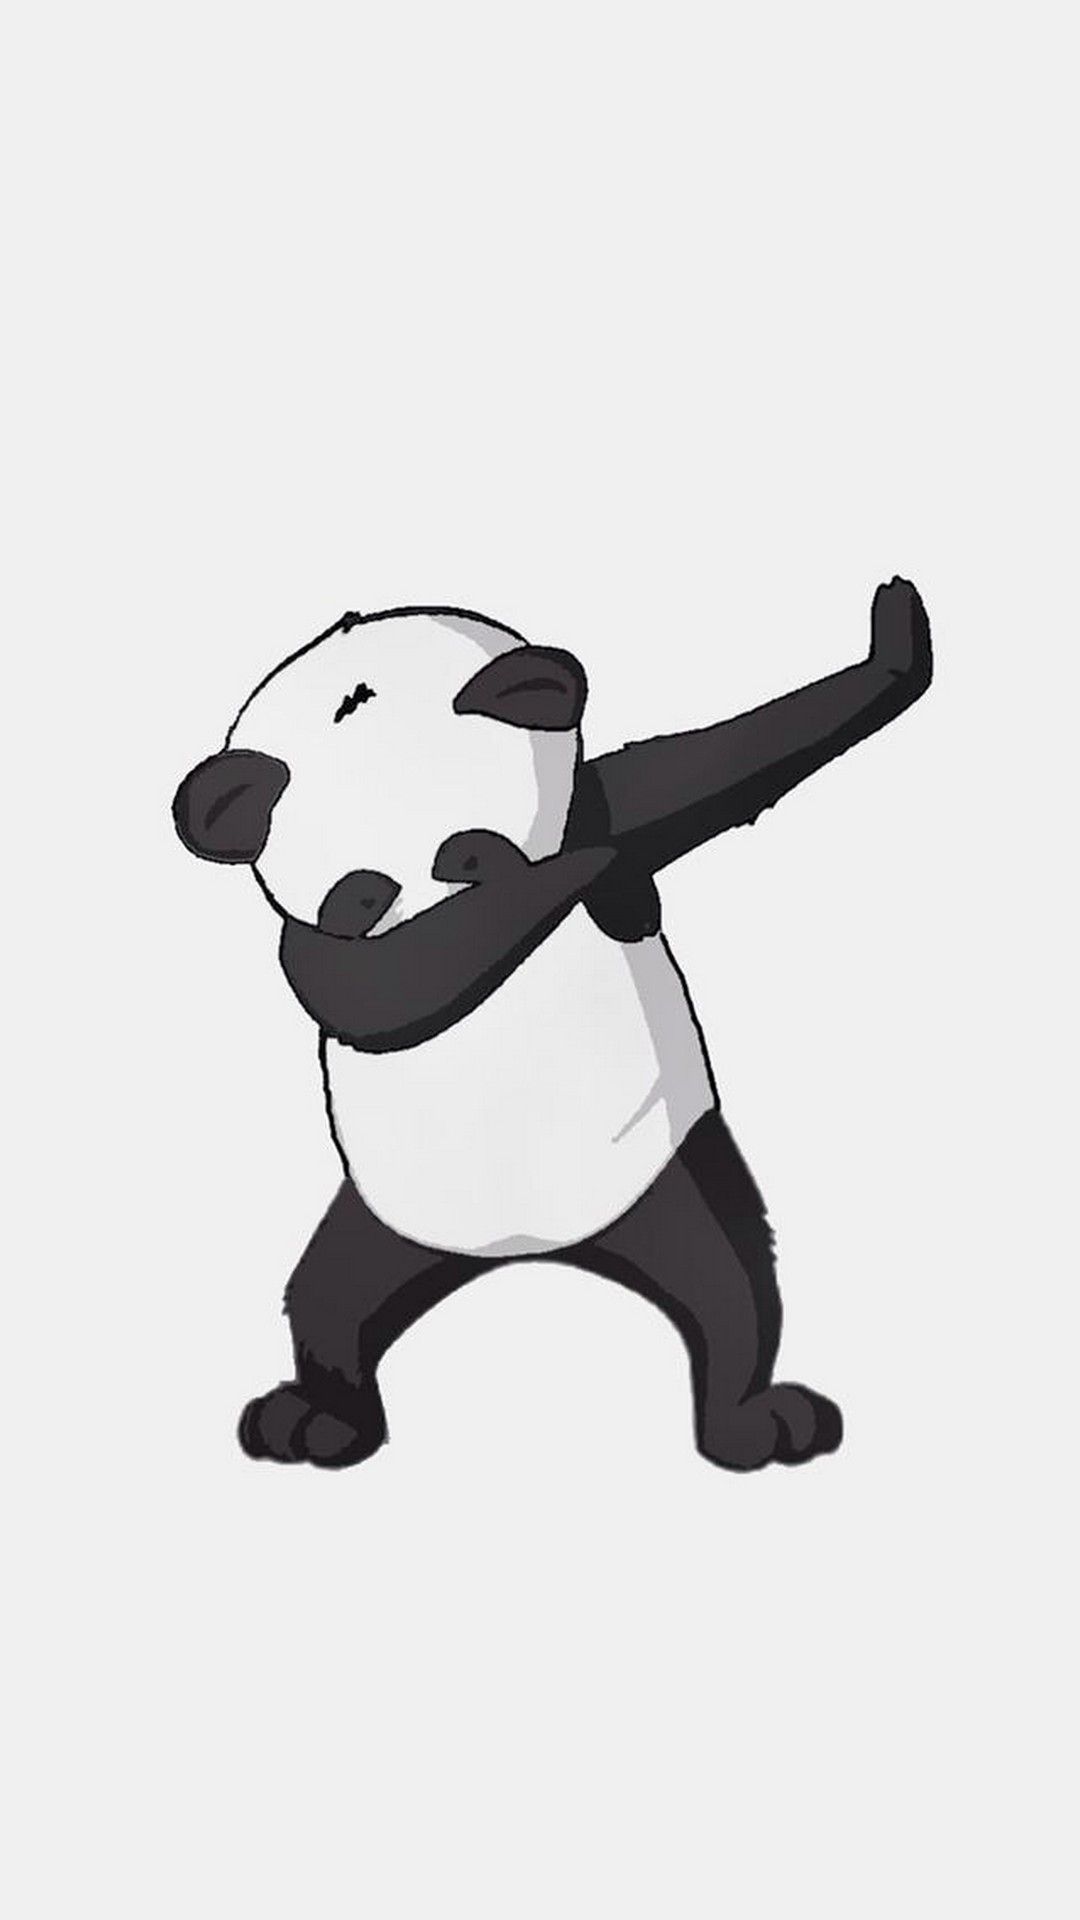 Cute Panda Dance Android Wallpaper .com